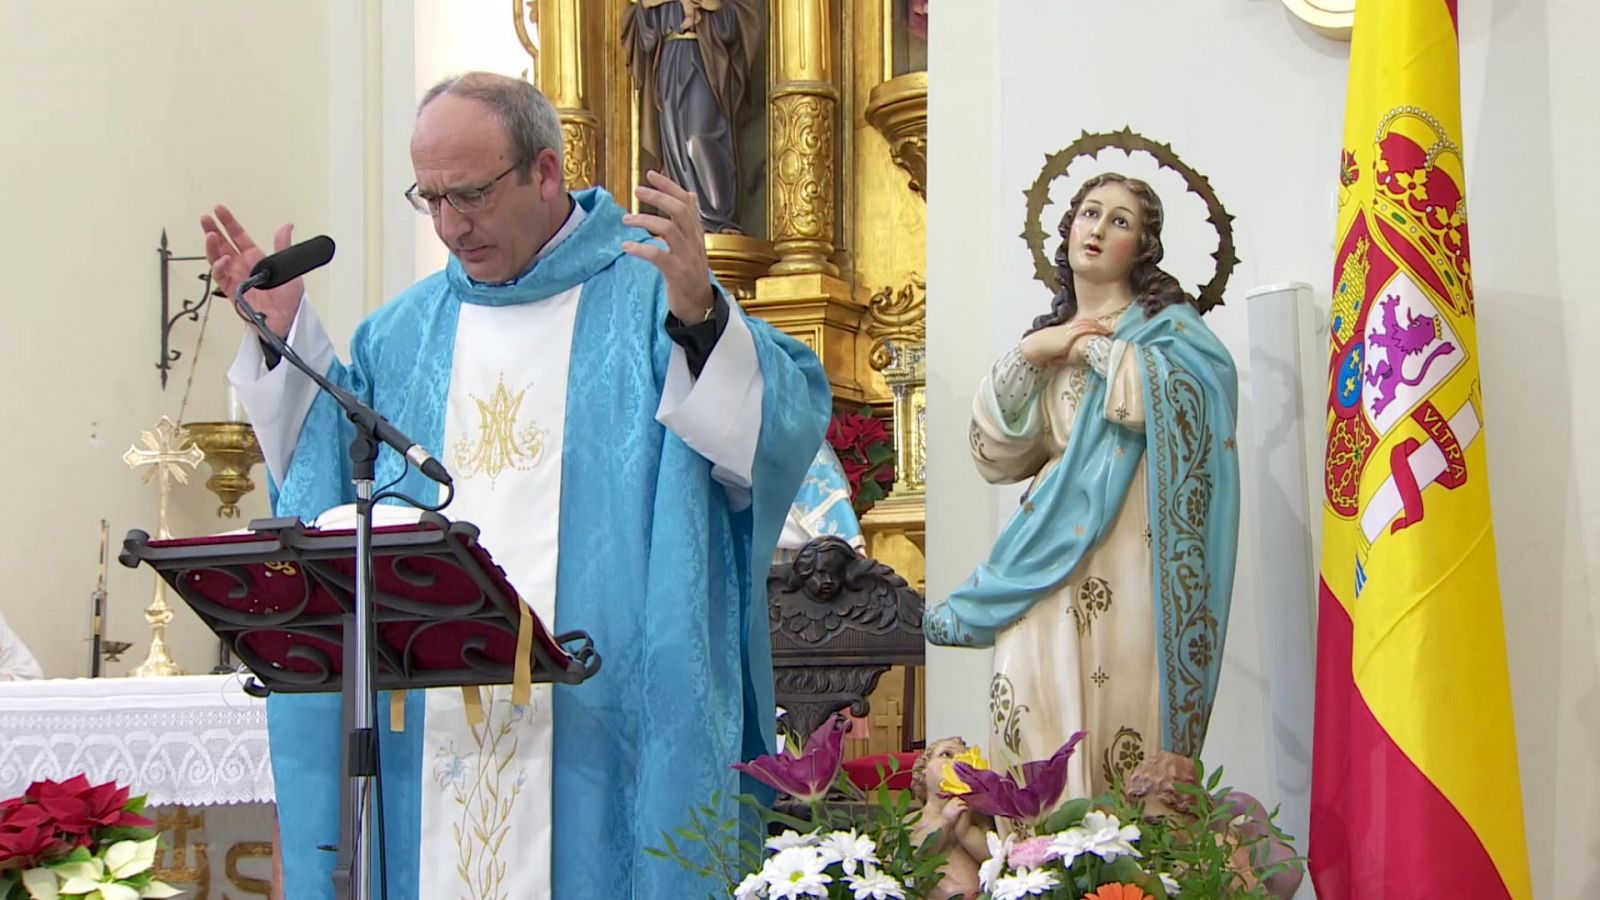 El Día del Señor - Parroquia de San Eugenio Mártir, Argés (Toledo) - RTVE.es